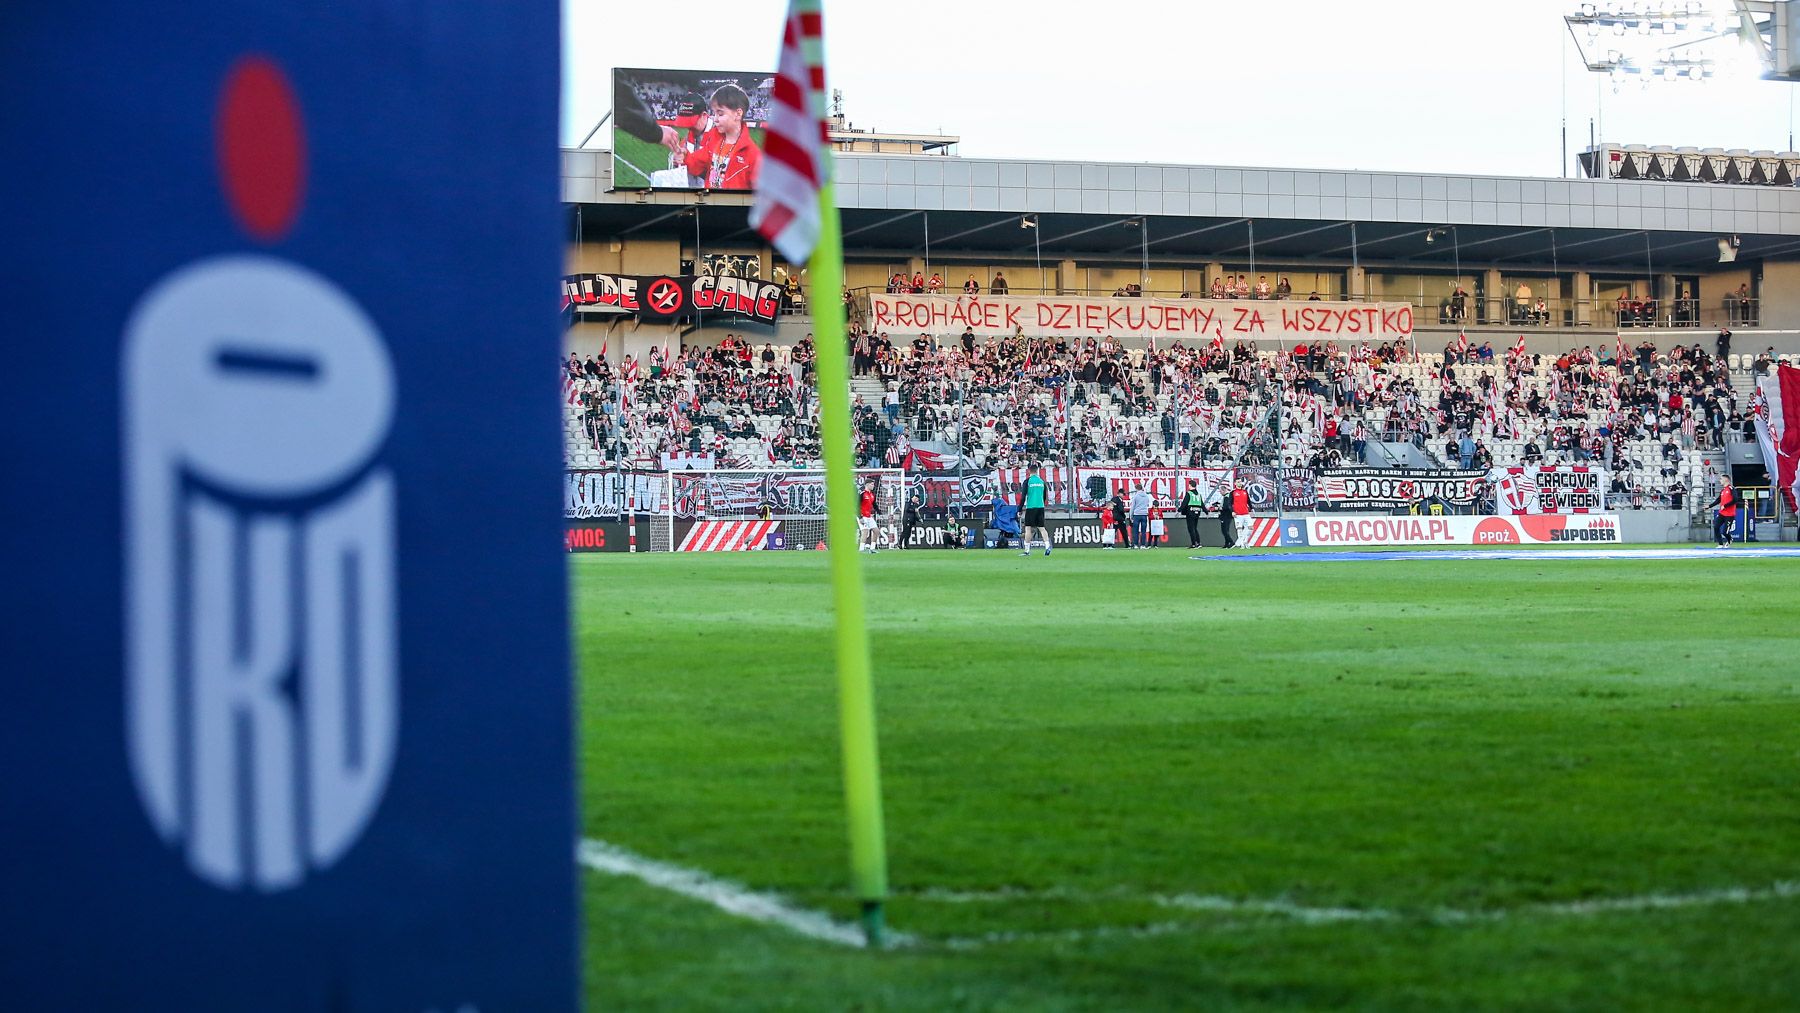 Transparent na stadionie Cracovii podczas meczu z ŁKS-em Łódź. Fot: Mateusz Kaleta/LoveKraków.pl